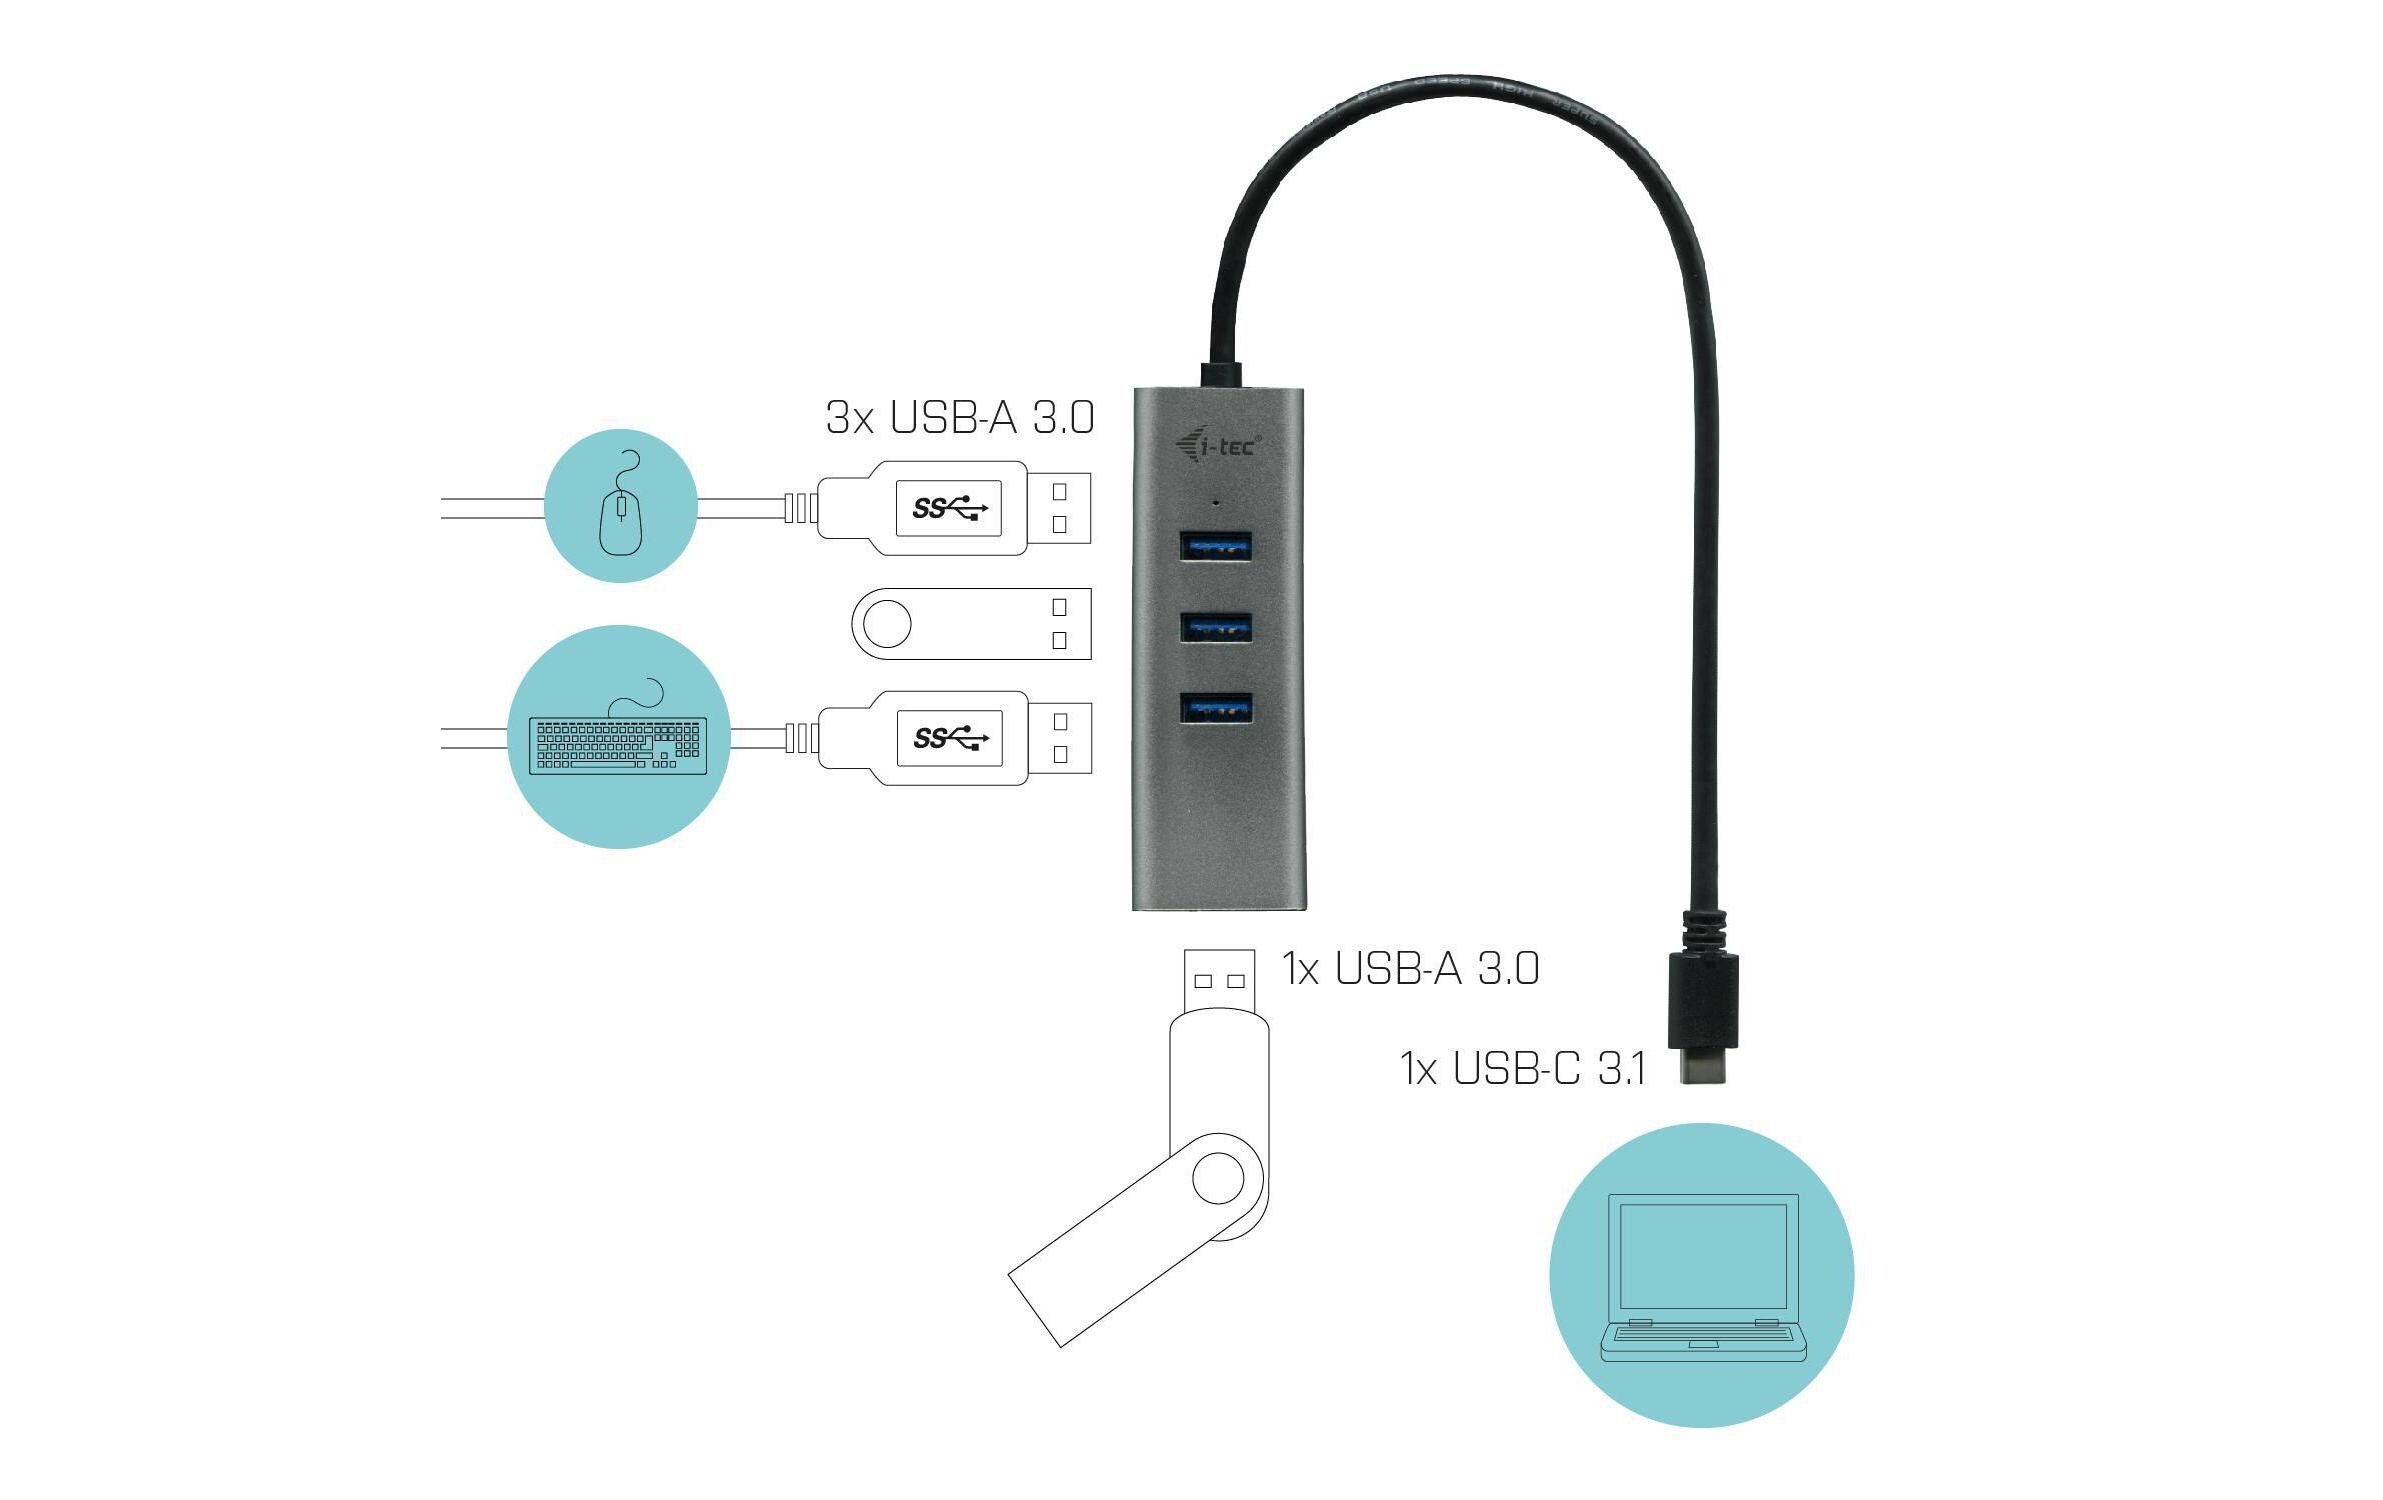 i-tec USB-C Hub Metal 4 Port